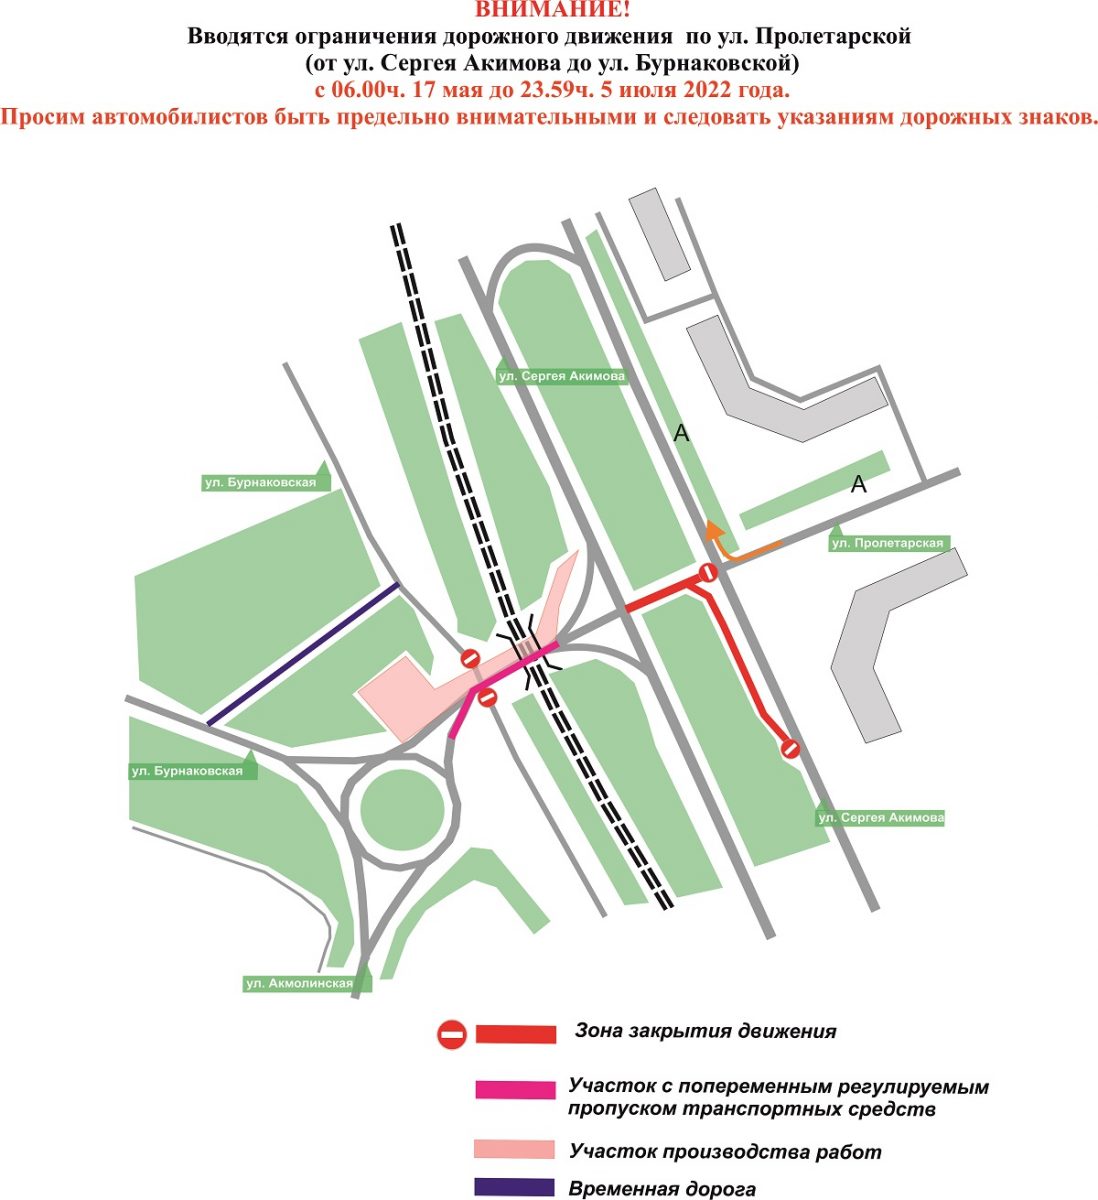 Ограничения дорожного движения на ул. Бурнаковской